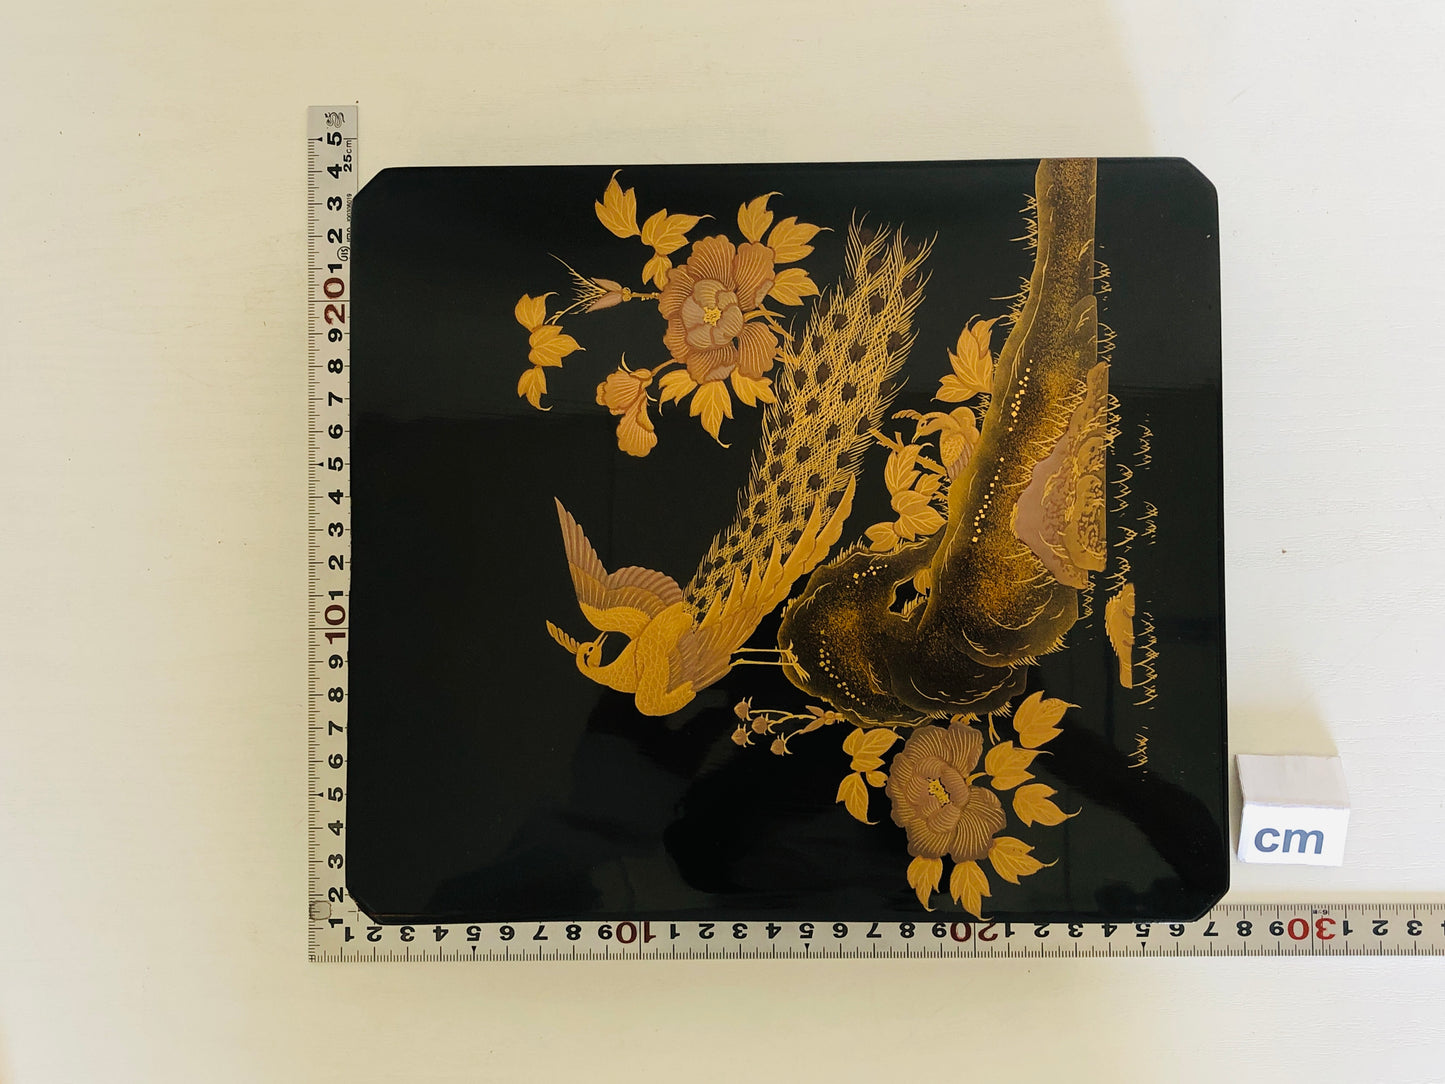 Y4167 BOX Makie Suzuri case flower bird signed Japan antique vintage storage